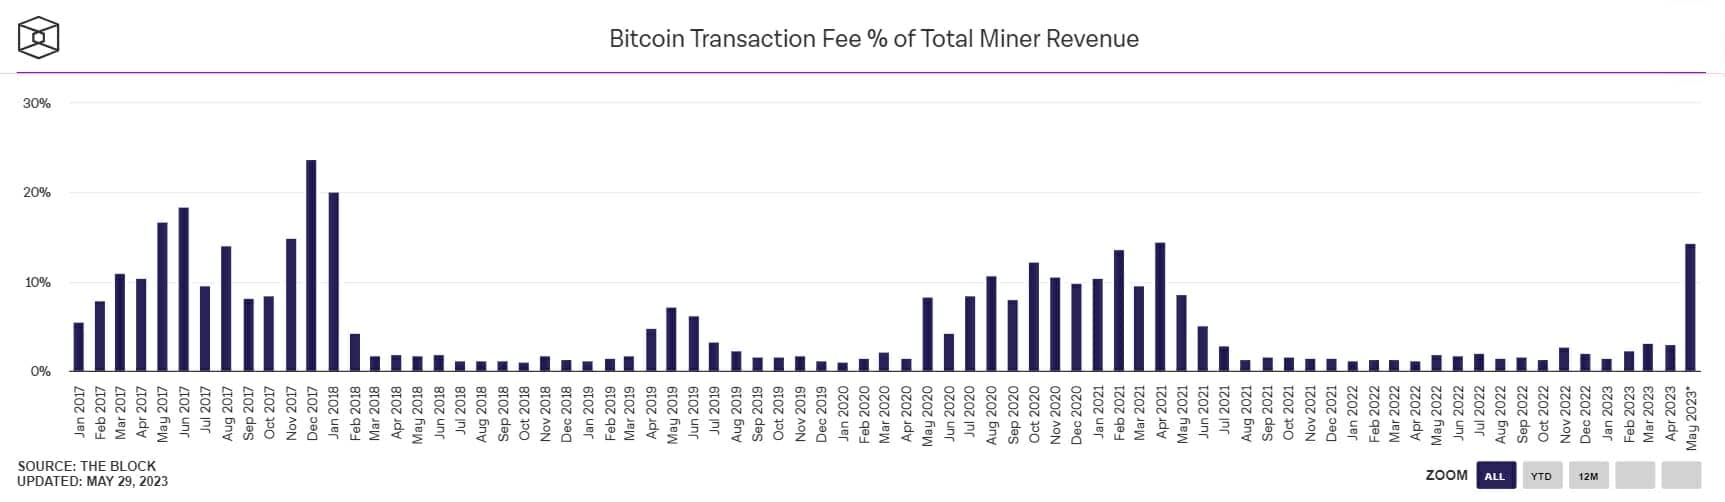 Les volumes de transaction sur Bitcoin explosent en mai, en plein bearmarket, au point de revenir aux niveaux aperçu lors des phases précédentes de bull run.